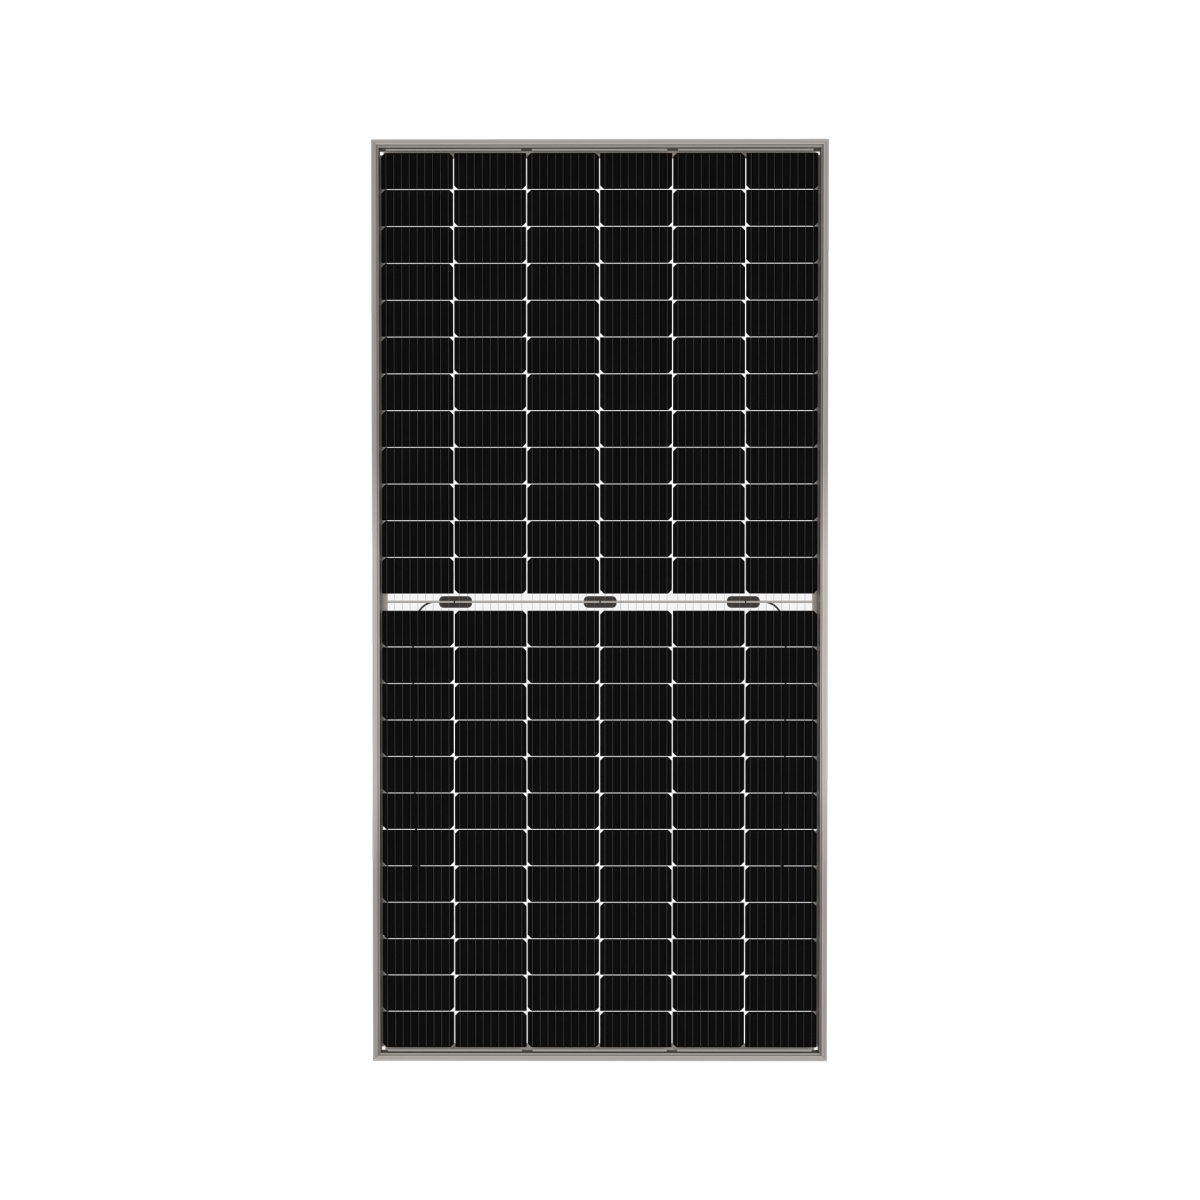 TommaTech 420Wp M6 144PM Cells Bifacial Half-Cut MB Solar Panel